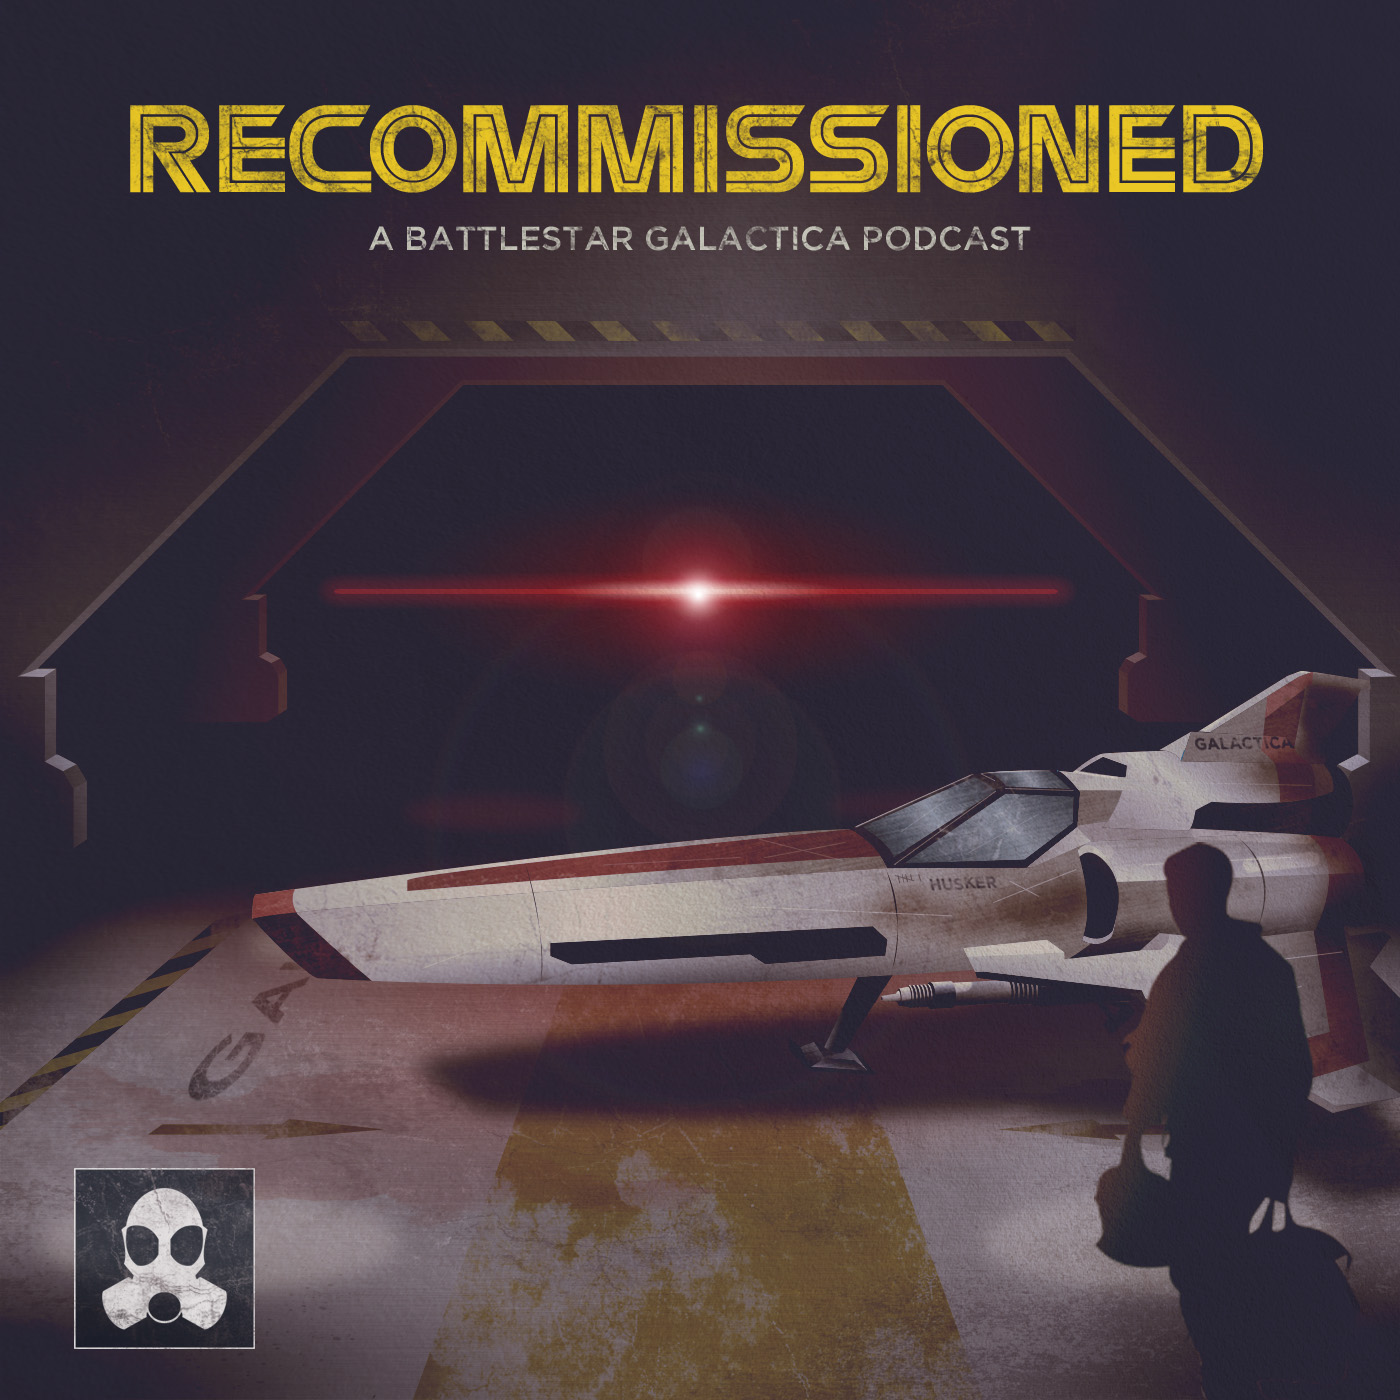 Battlestar Galactica "Miniseries Part 2"